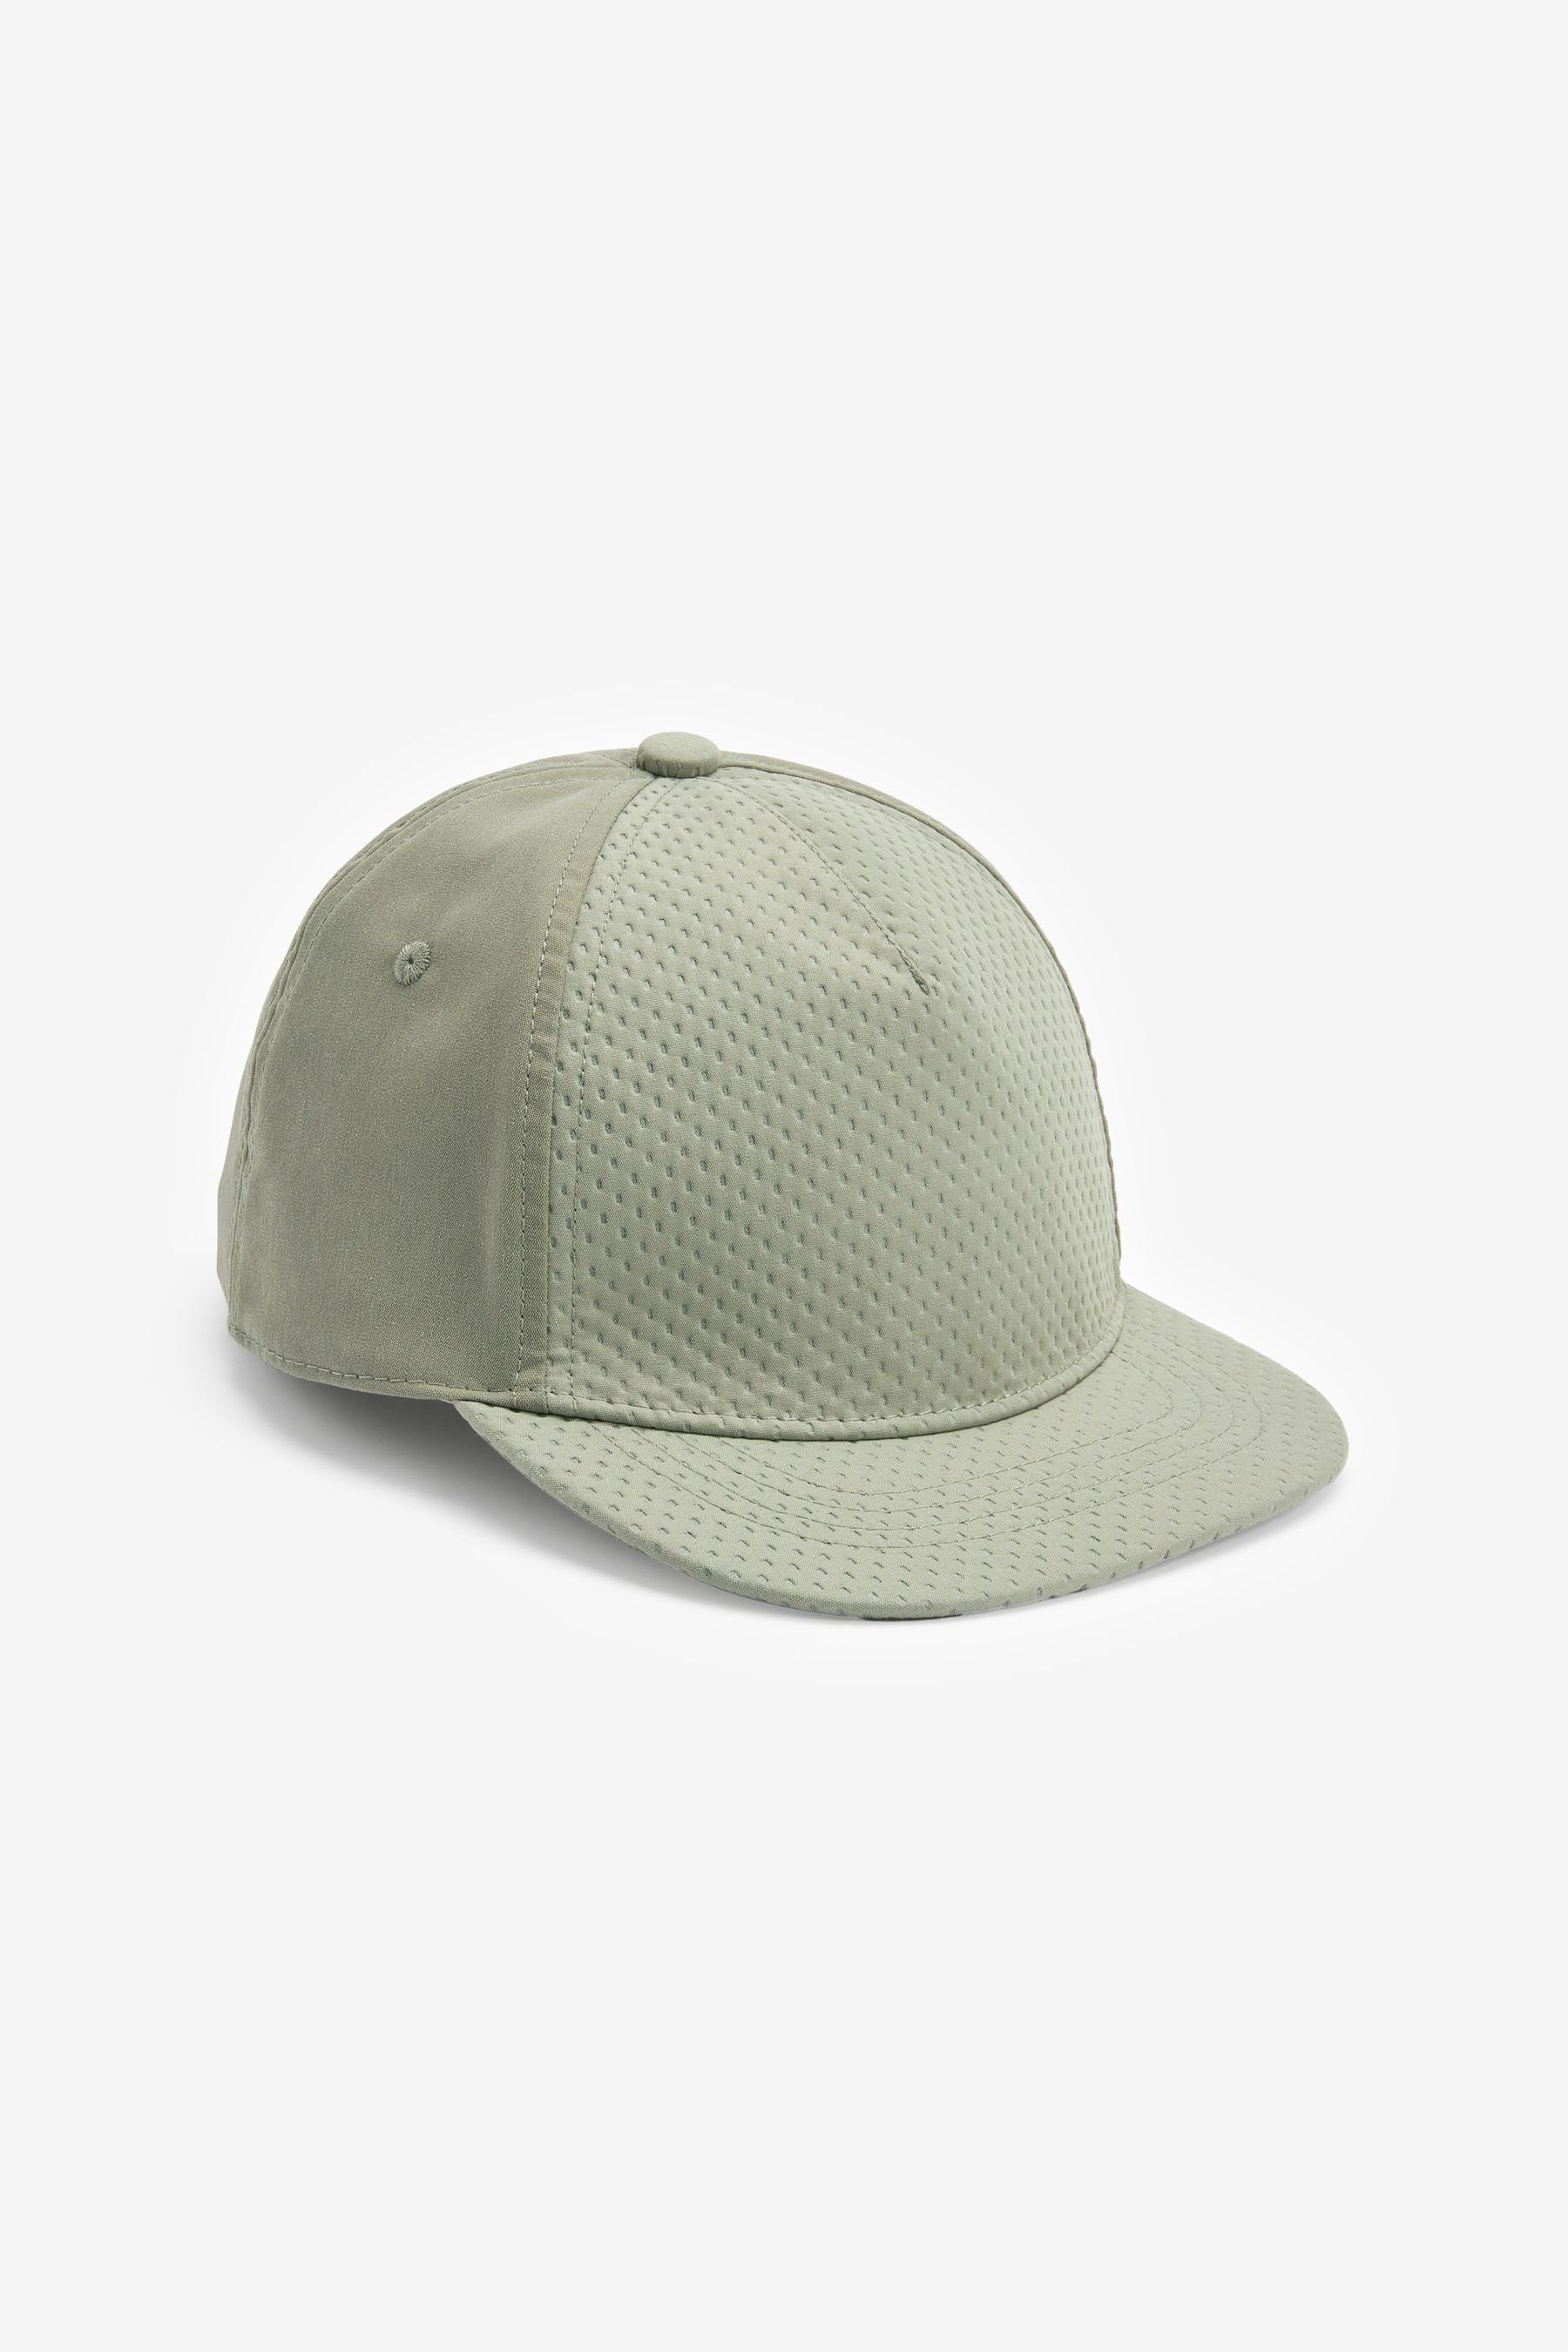 (1-St) Green Baseball Kappe Polyamid Cap Sage aus Next hochwertigem